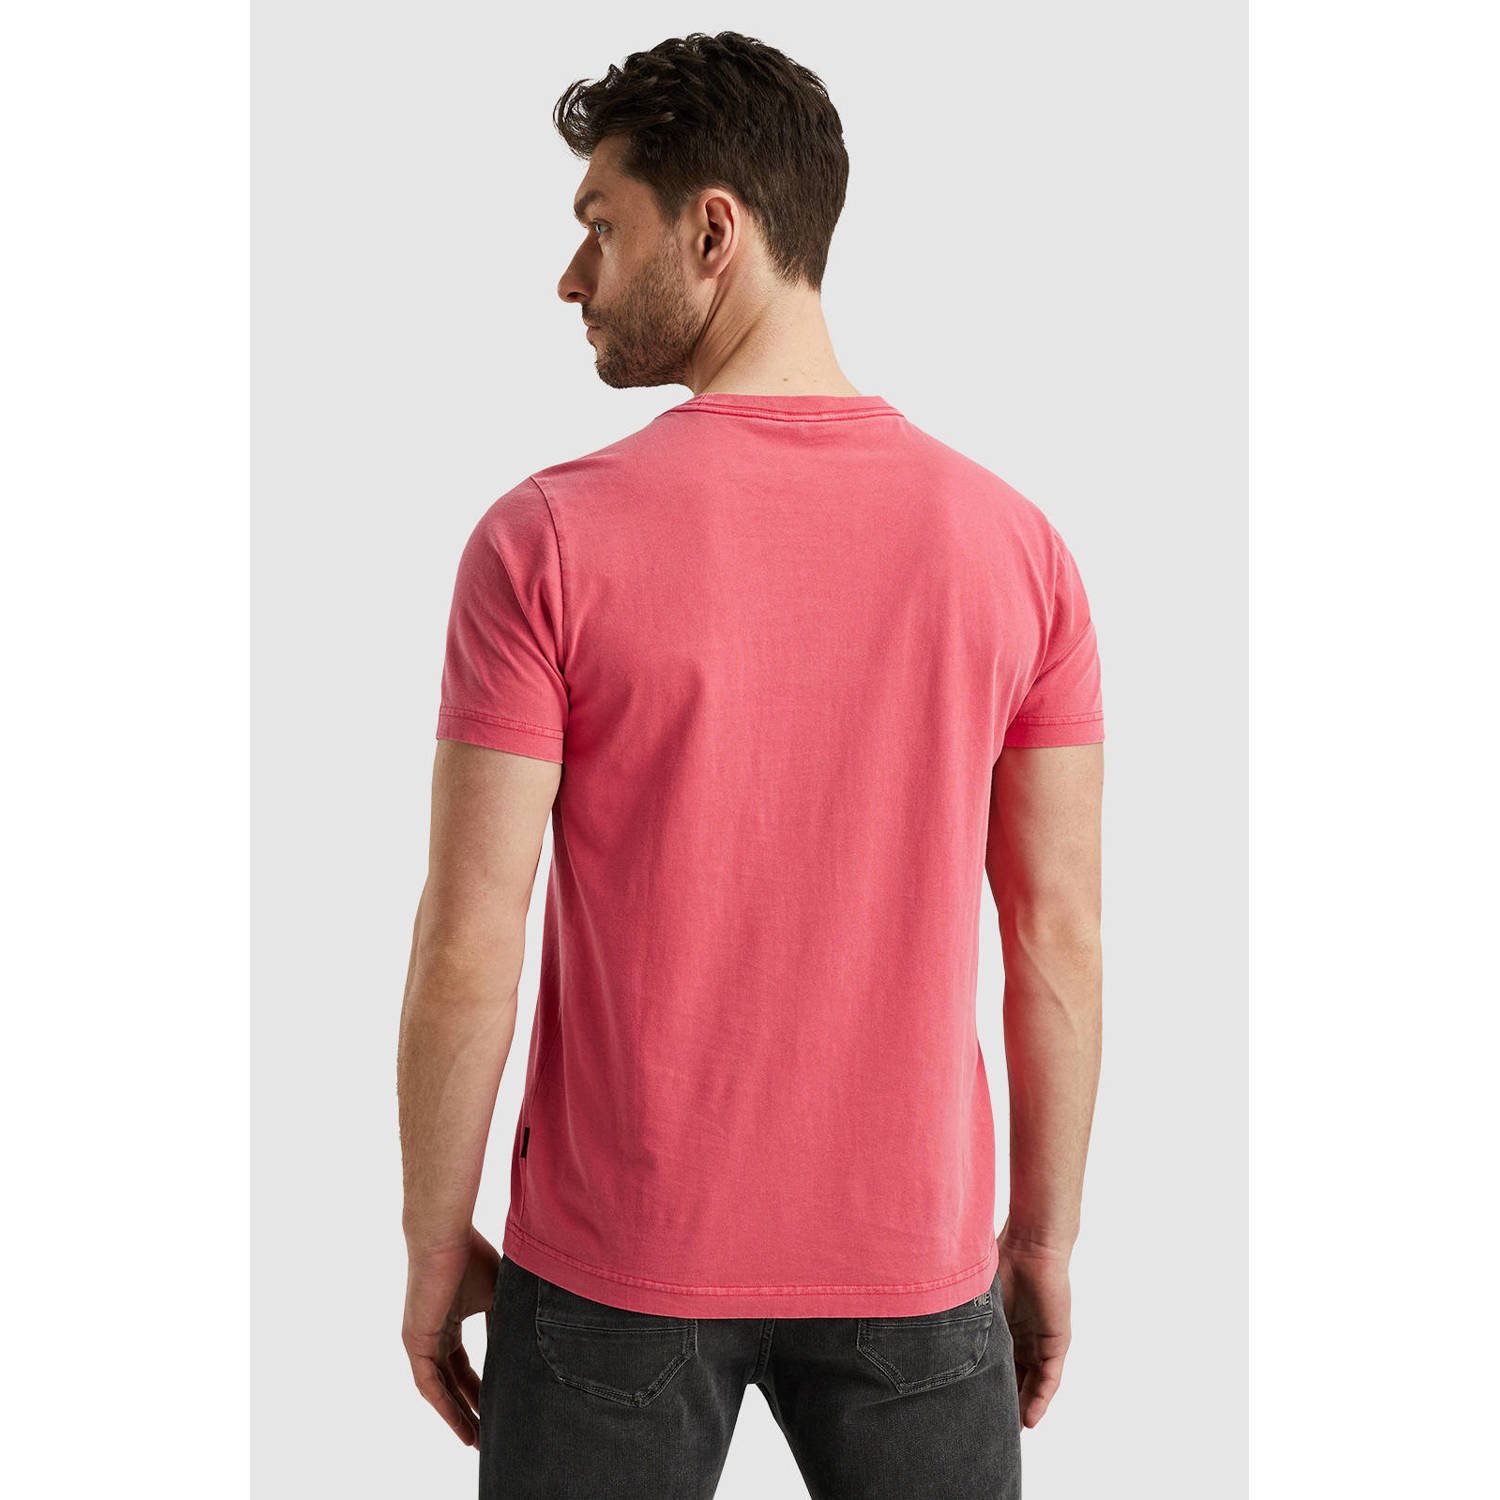 PME Legend T-shirt met printopdruk roze